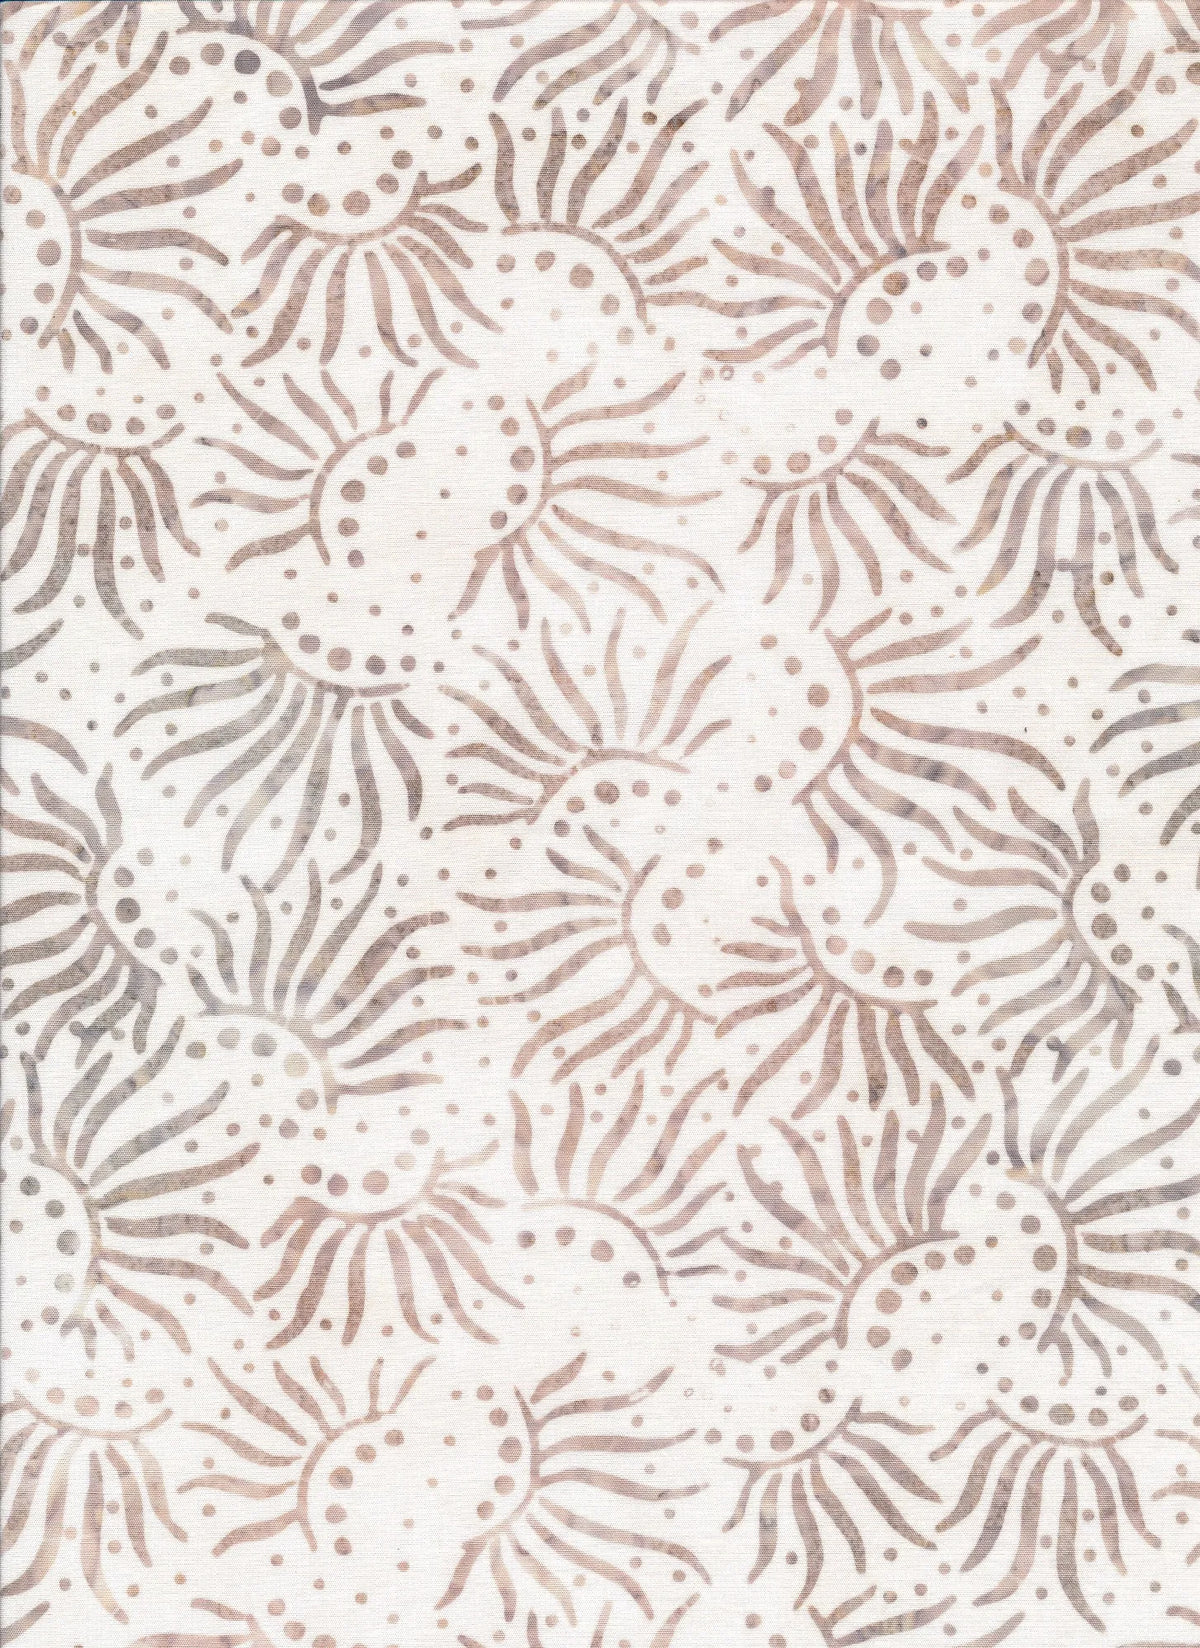 Majestic Batiks Quilt Fabric - Hazel Sunbeams in Cream/Tan - HAZEL 200